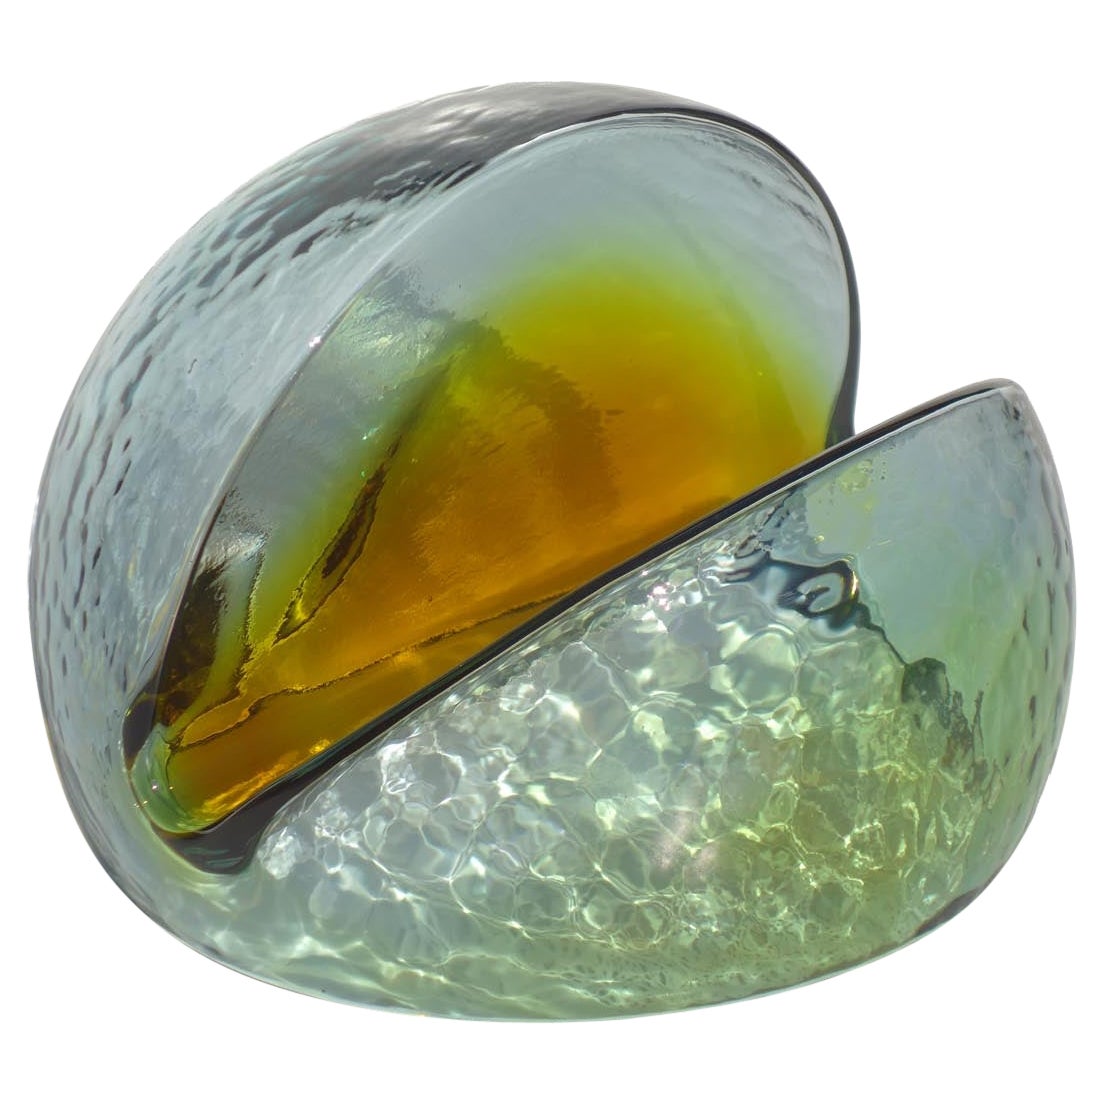 1970s Toni Zuccheri Veart Murano Italian Design Glass Sculpture For Sale